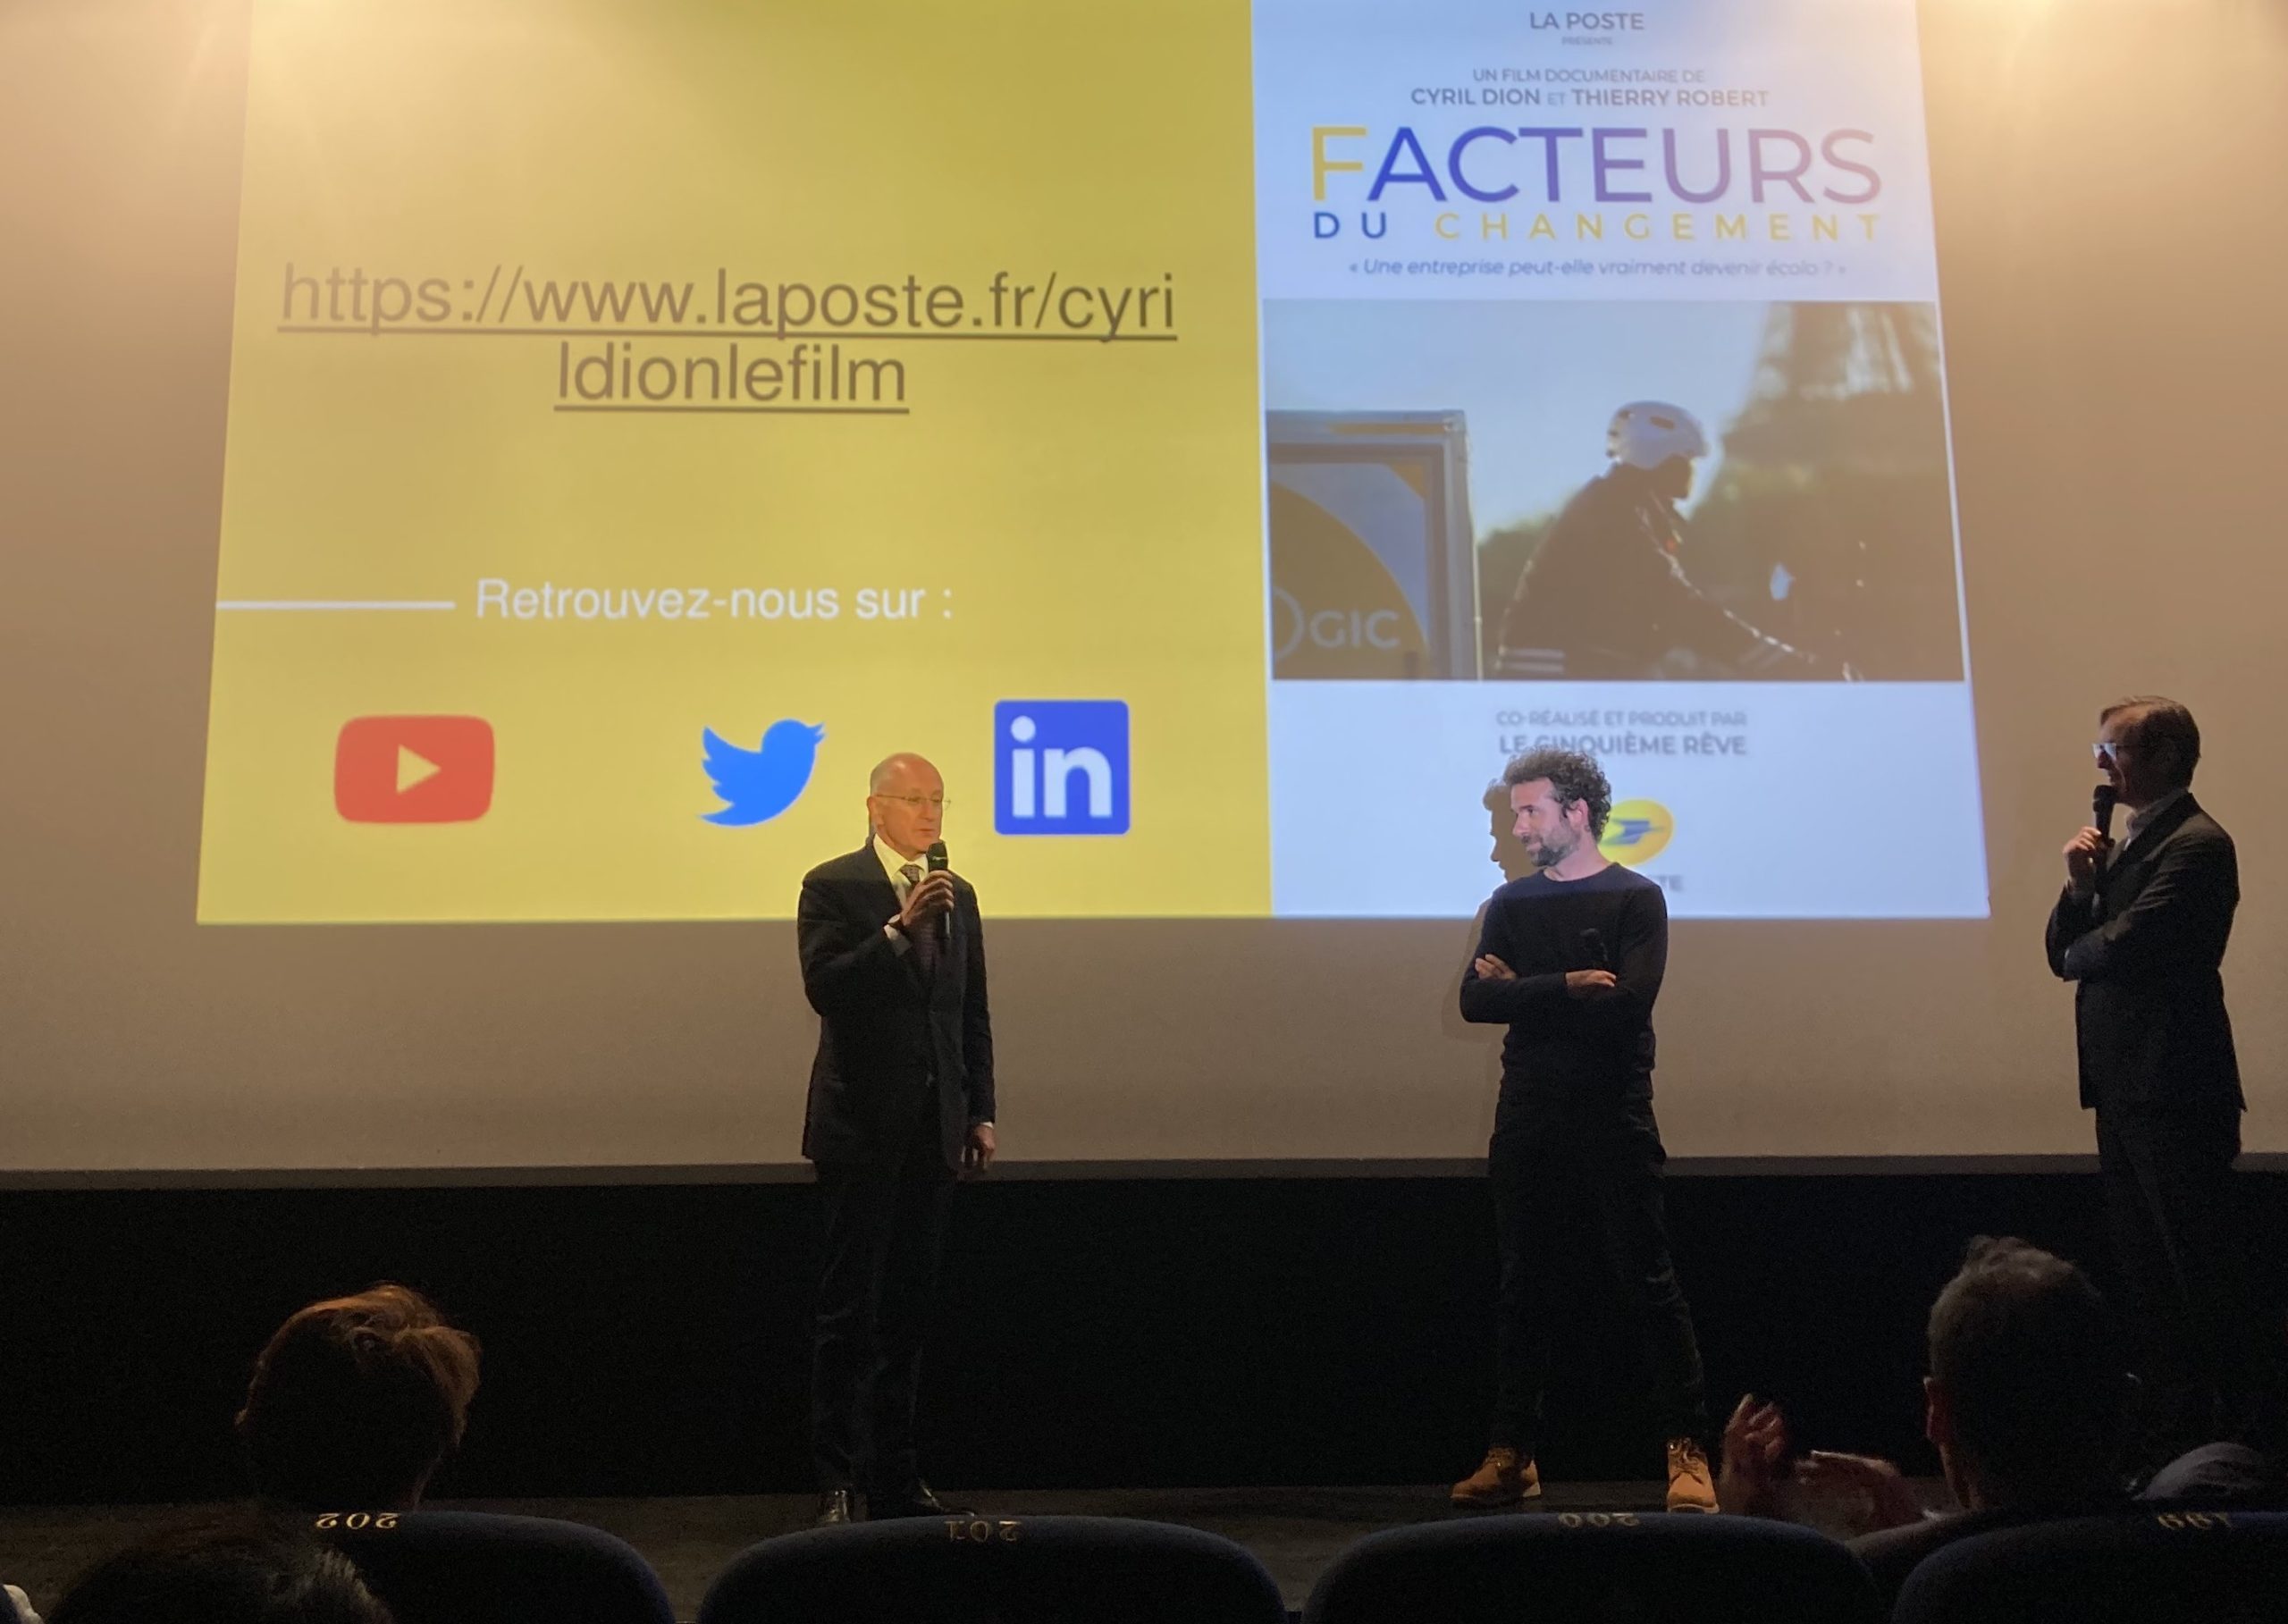 Philippe Wahl, P-DG du Groupe La poste et Cyril Dion, réalisateur du film 